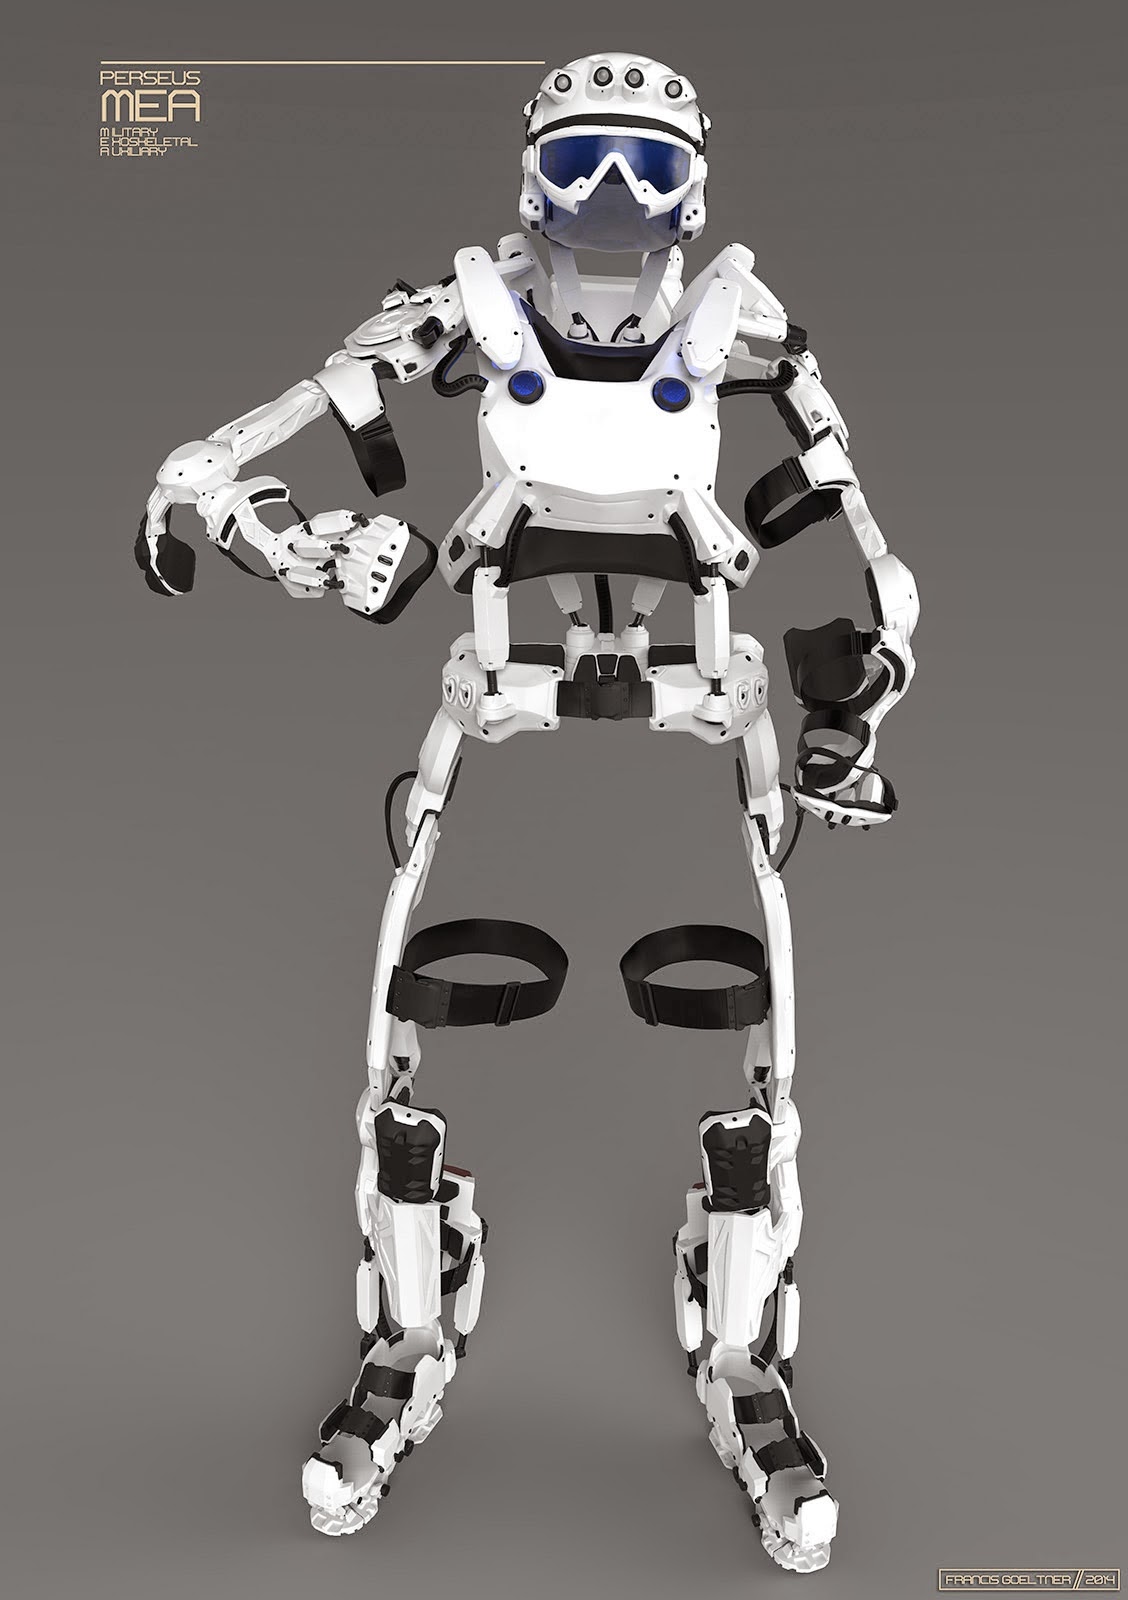 A Powered Exoskeleton  RoboTronicsPro